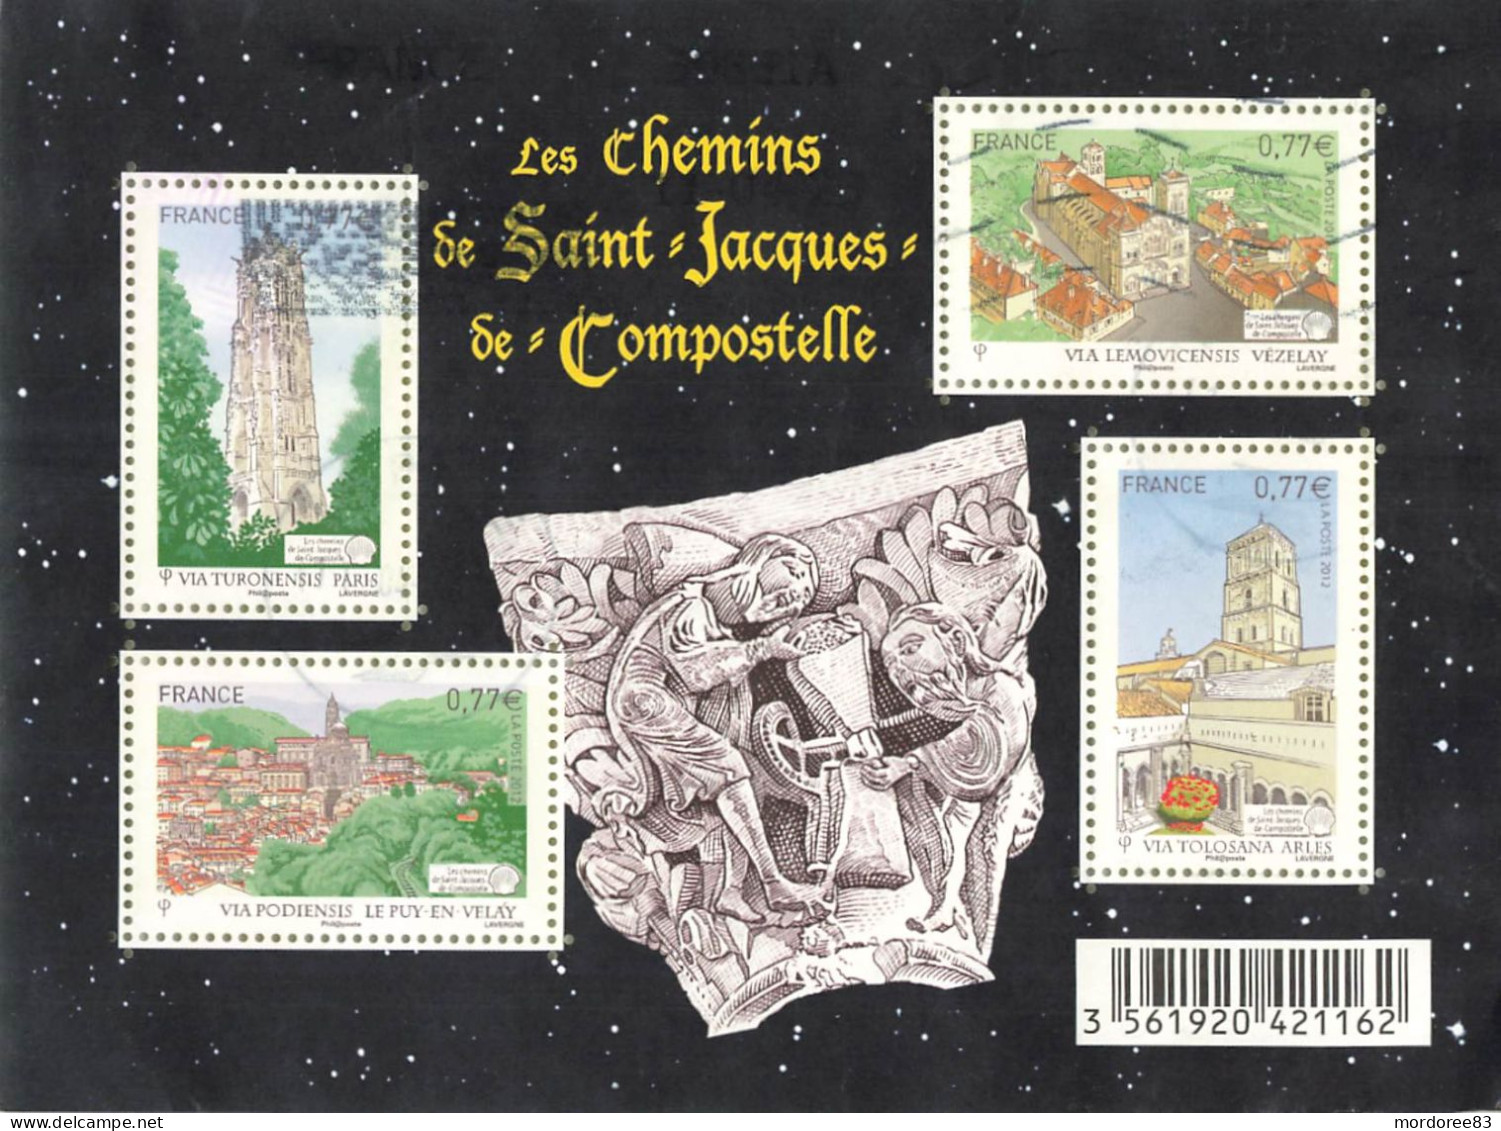 FRANCE 2012 BLOC OBLITERE LES CHEMINS DE SAINT JACQUES DE COMPOSTELLE - F 4641 - - Usados